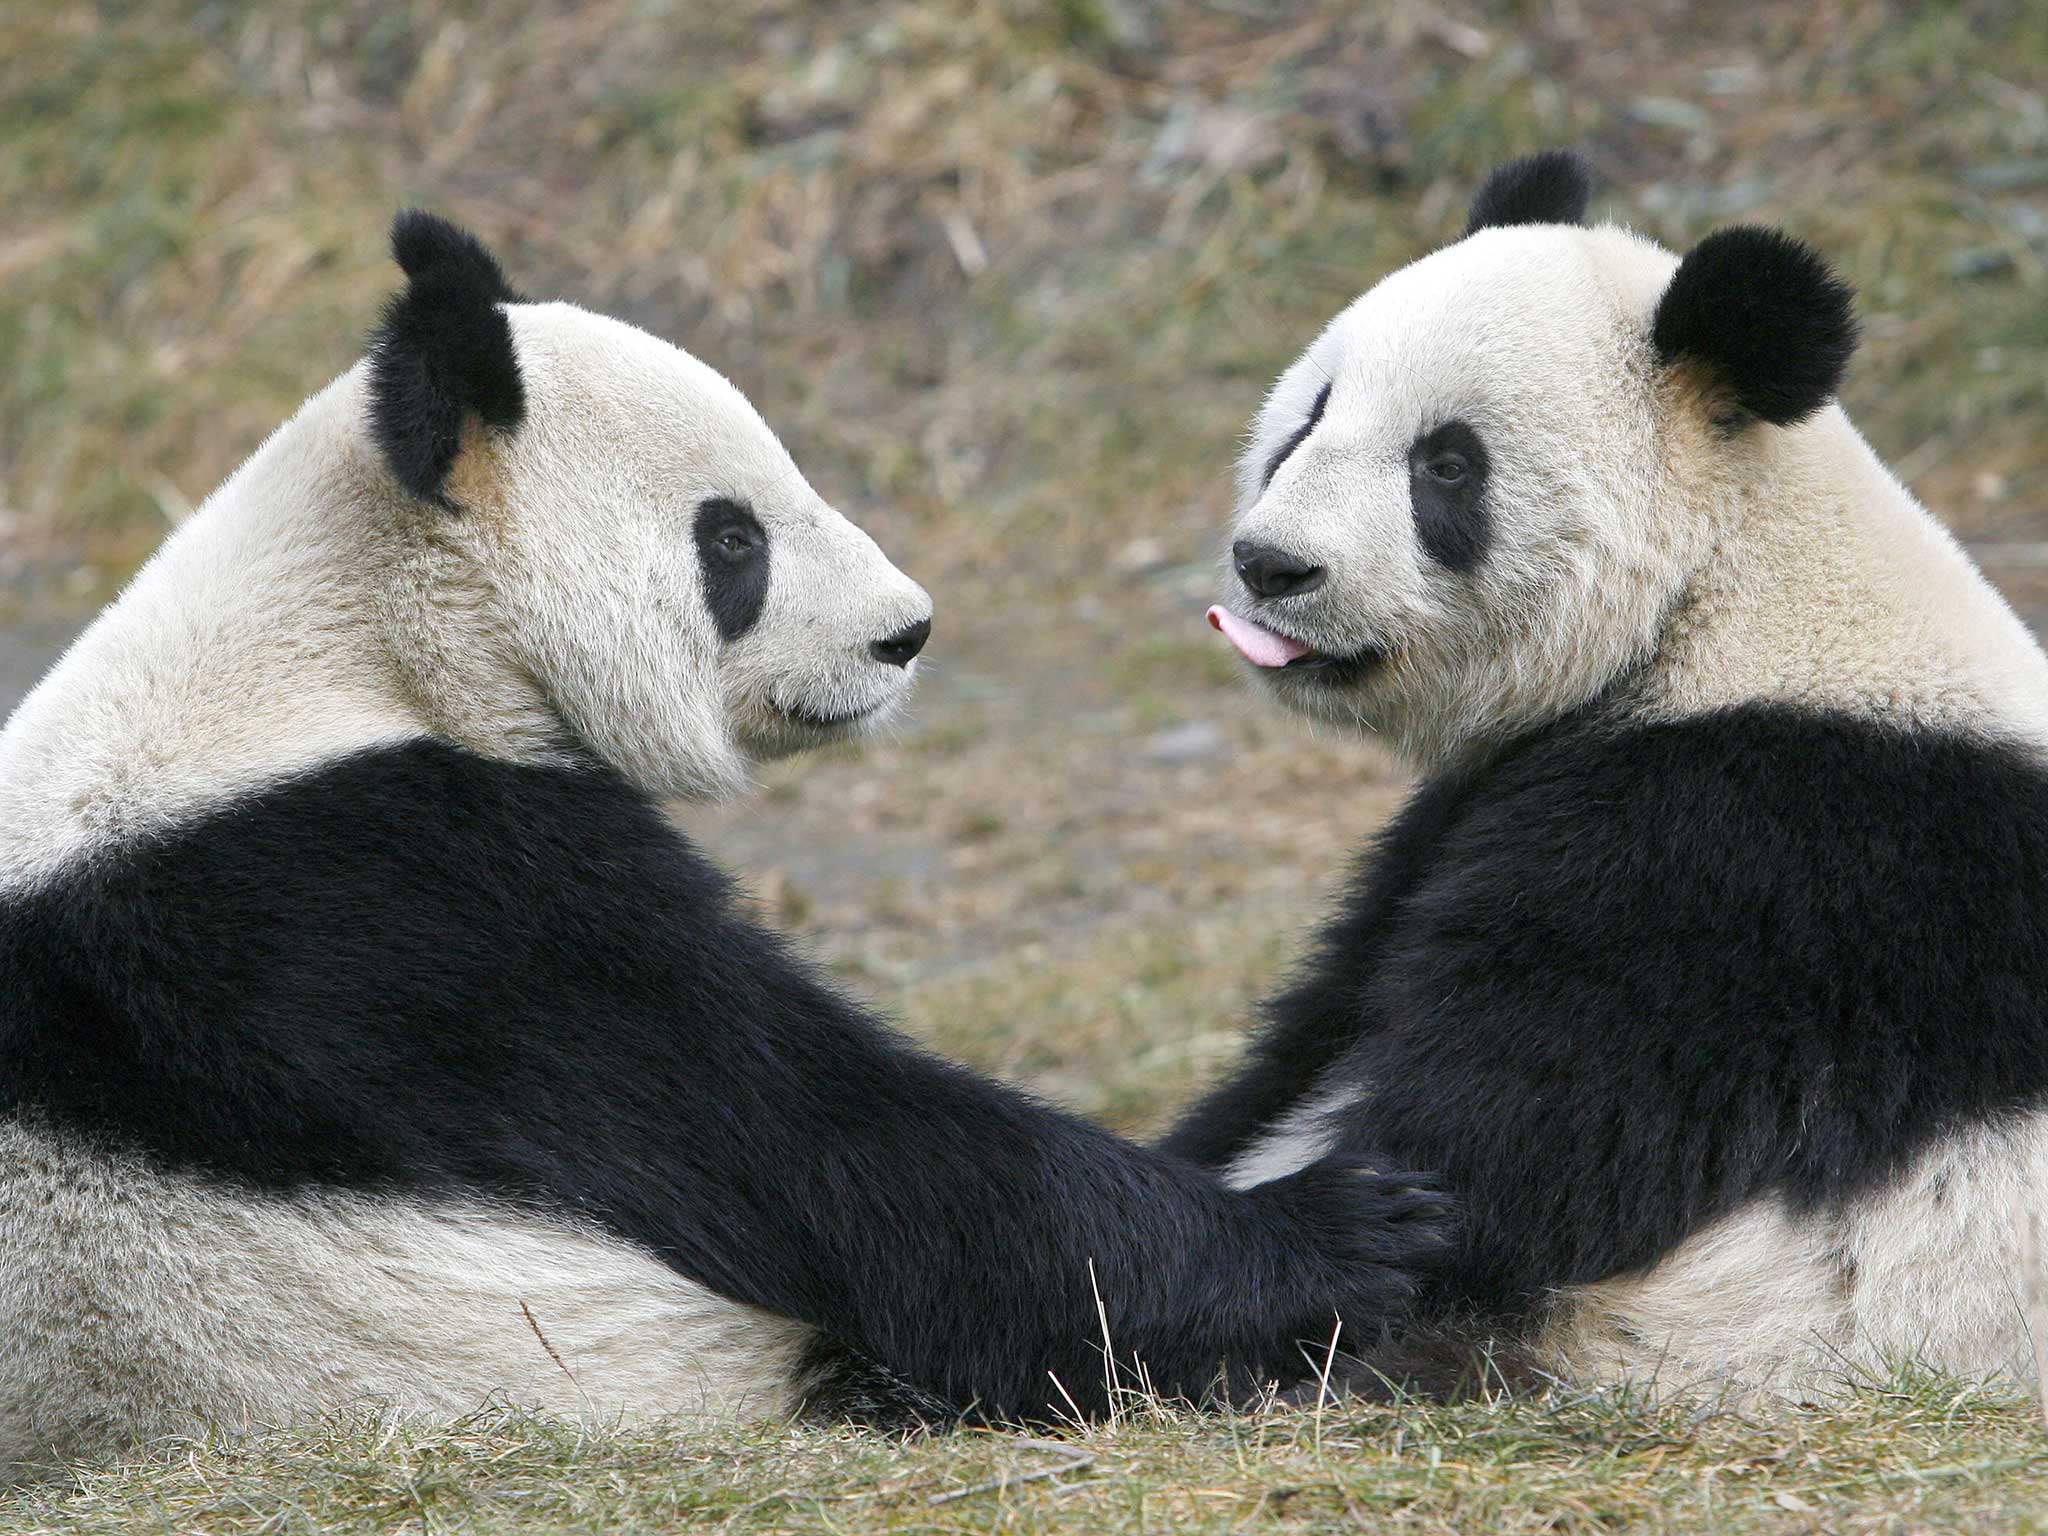 Pandas may be more sociable than previously thought